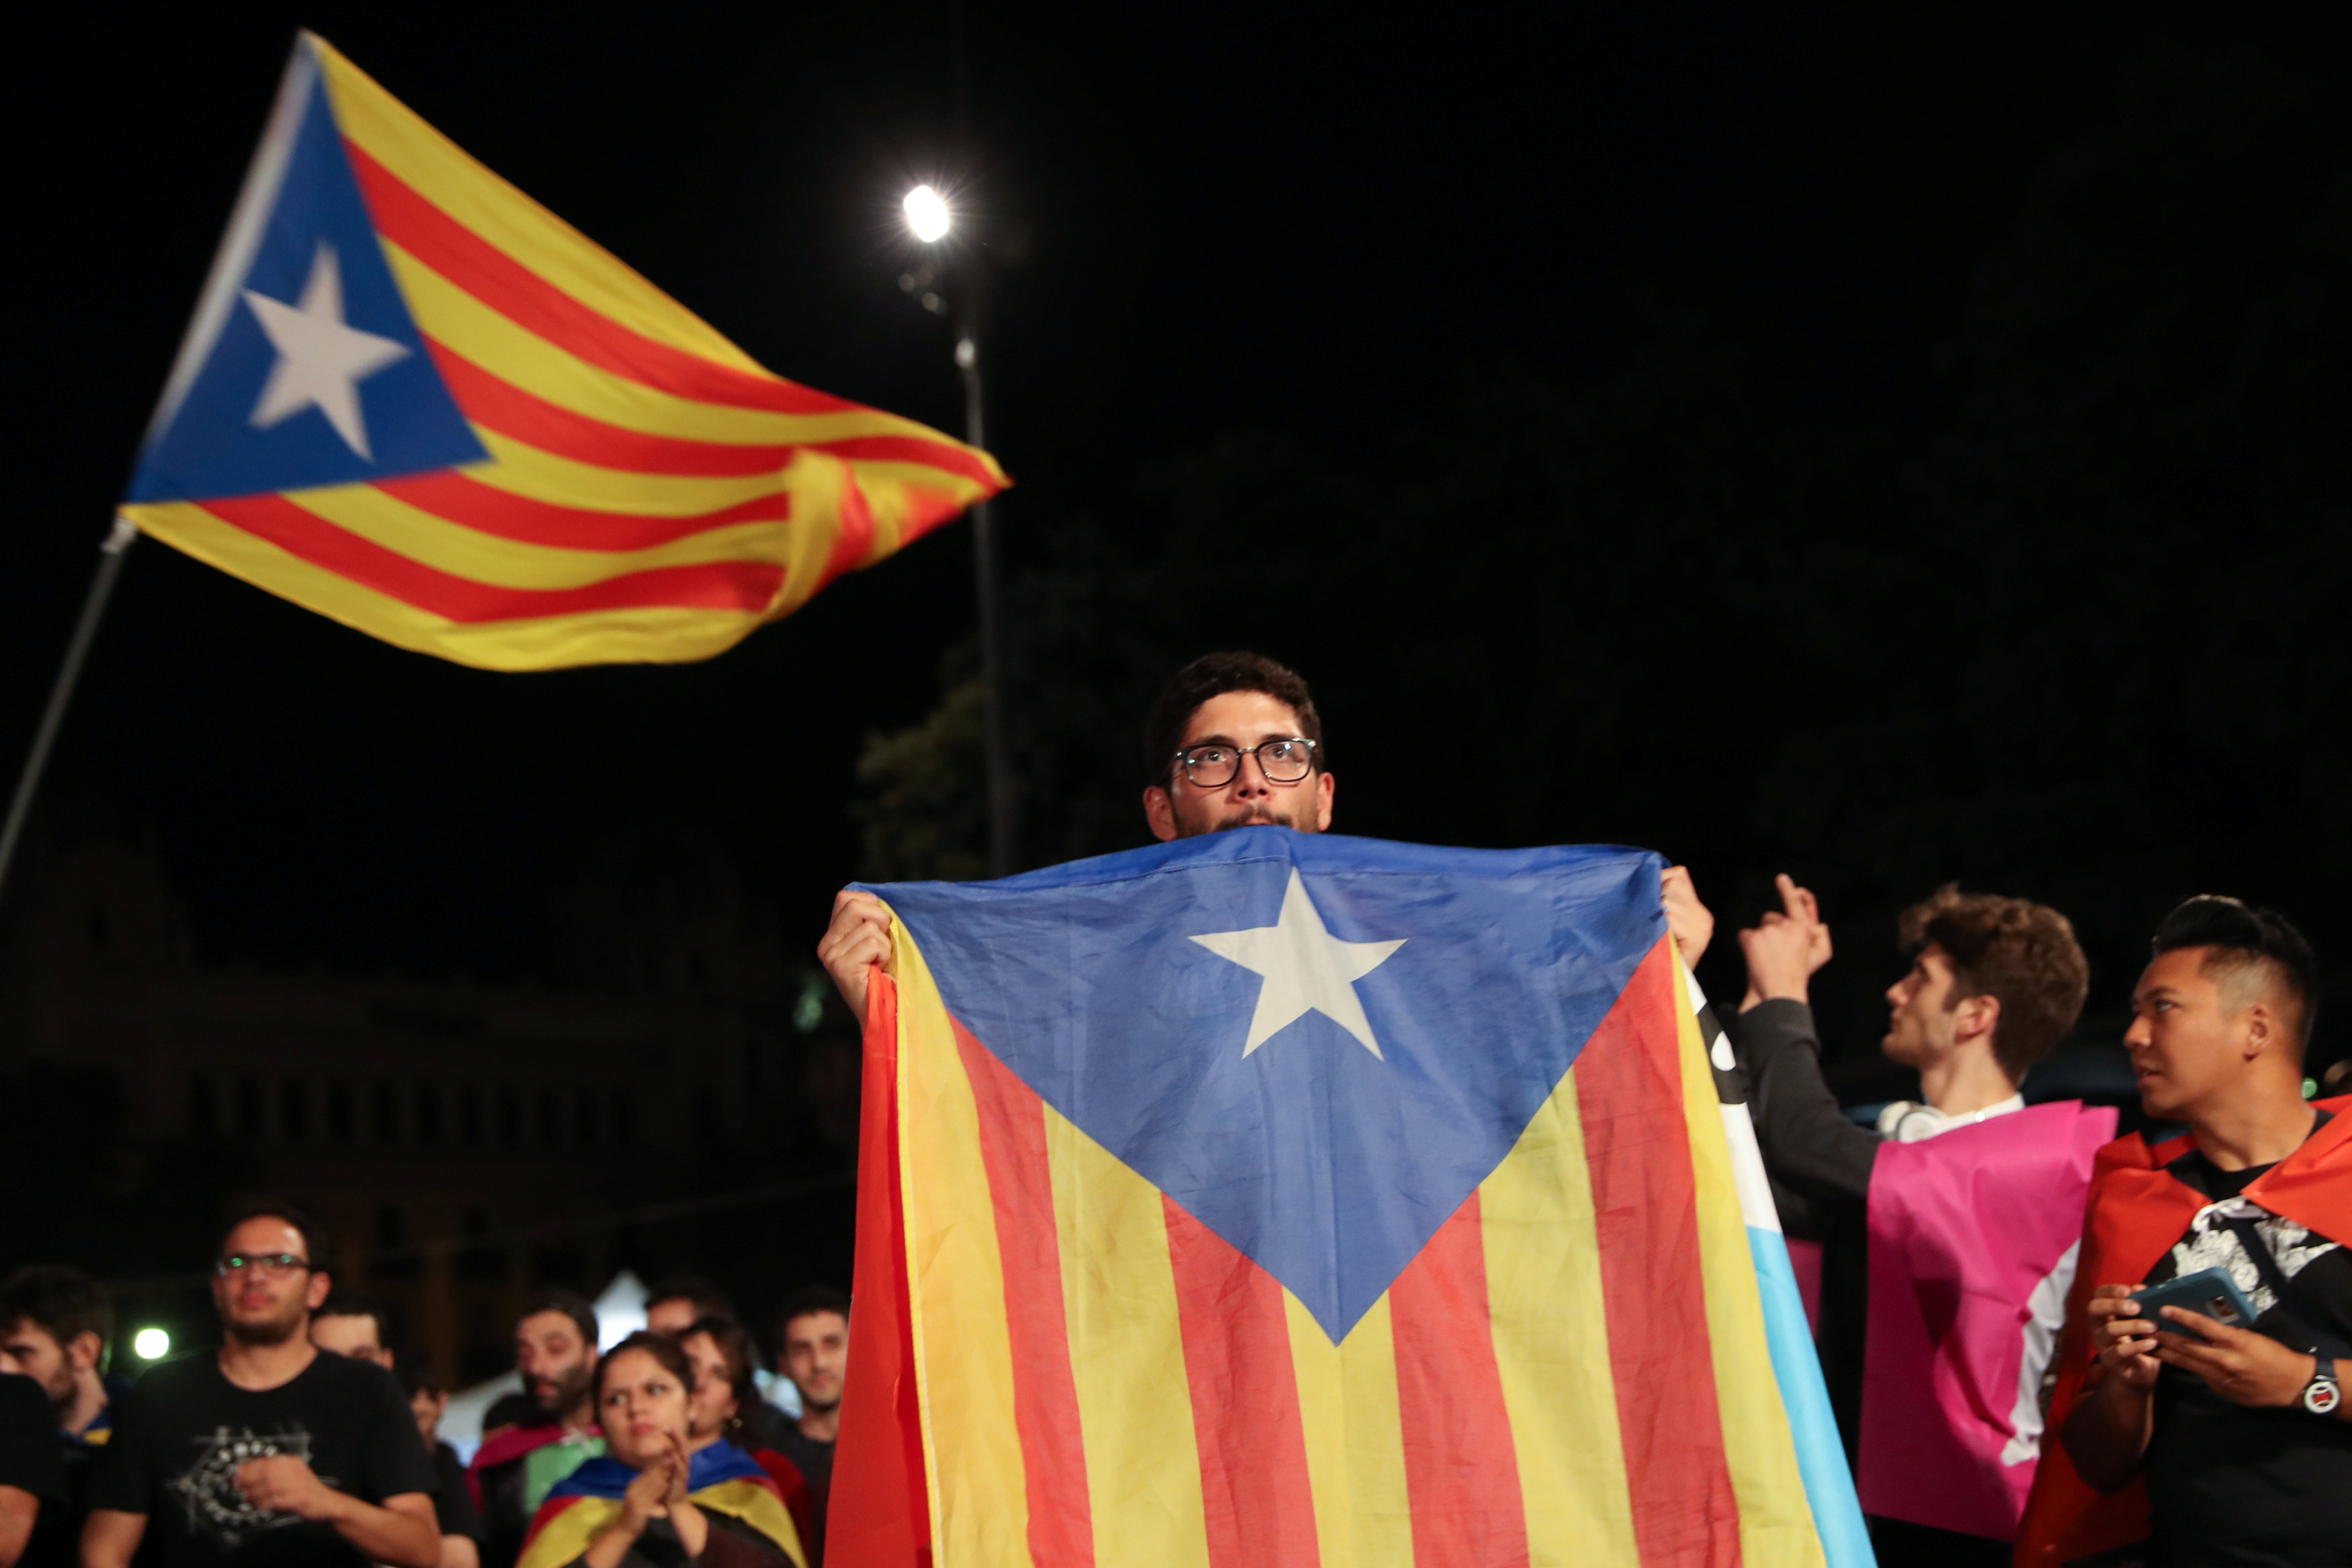 Ahora, existe una lucha por el derecho catalán a decidir su futuro y la irreformabilidad del Estado español.